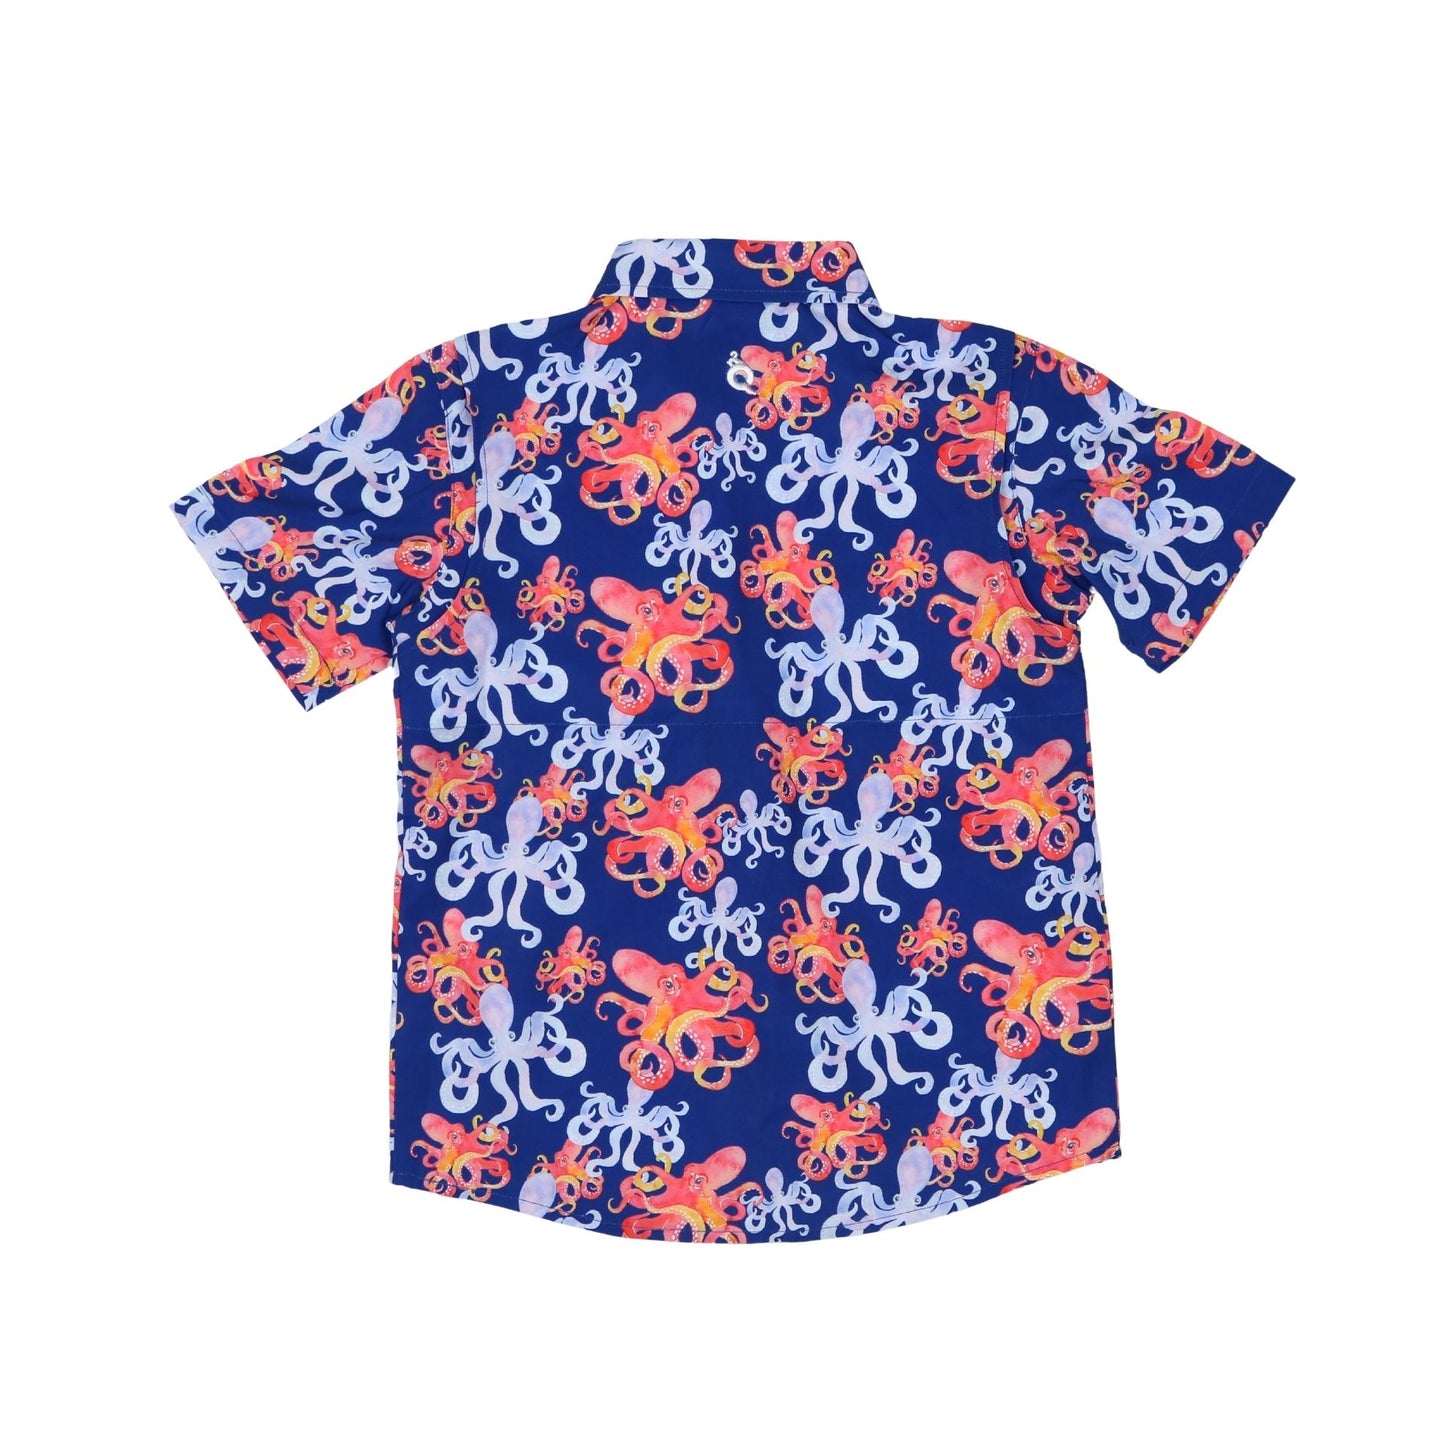 Octopus Short Sleeve Shirt